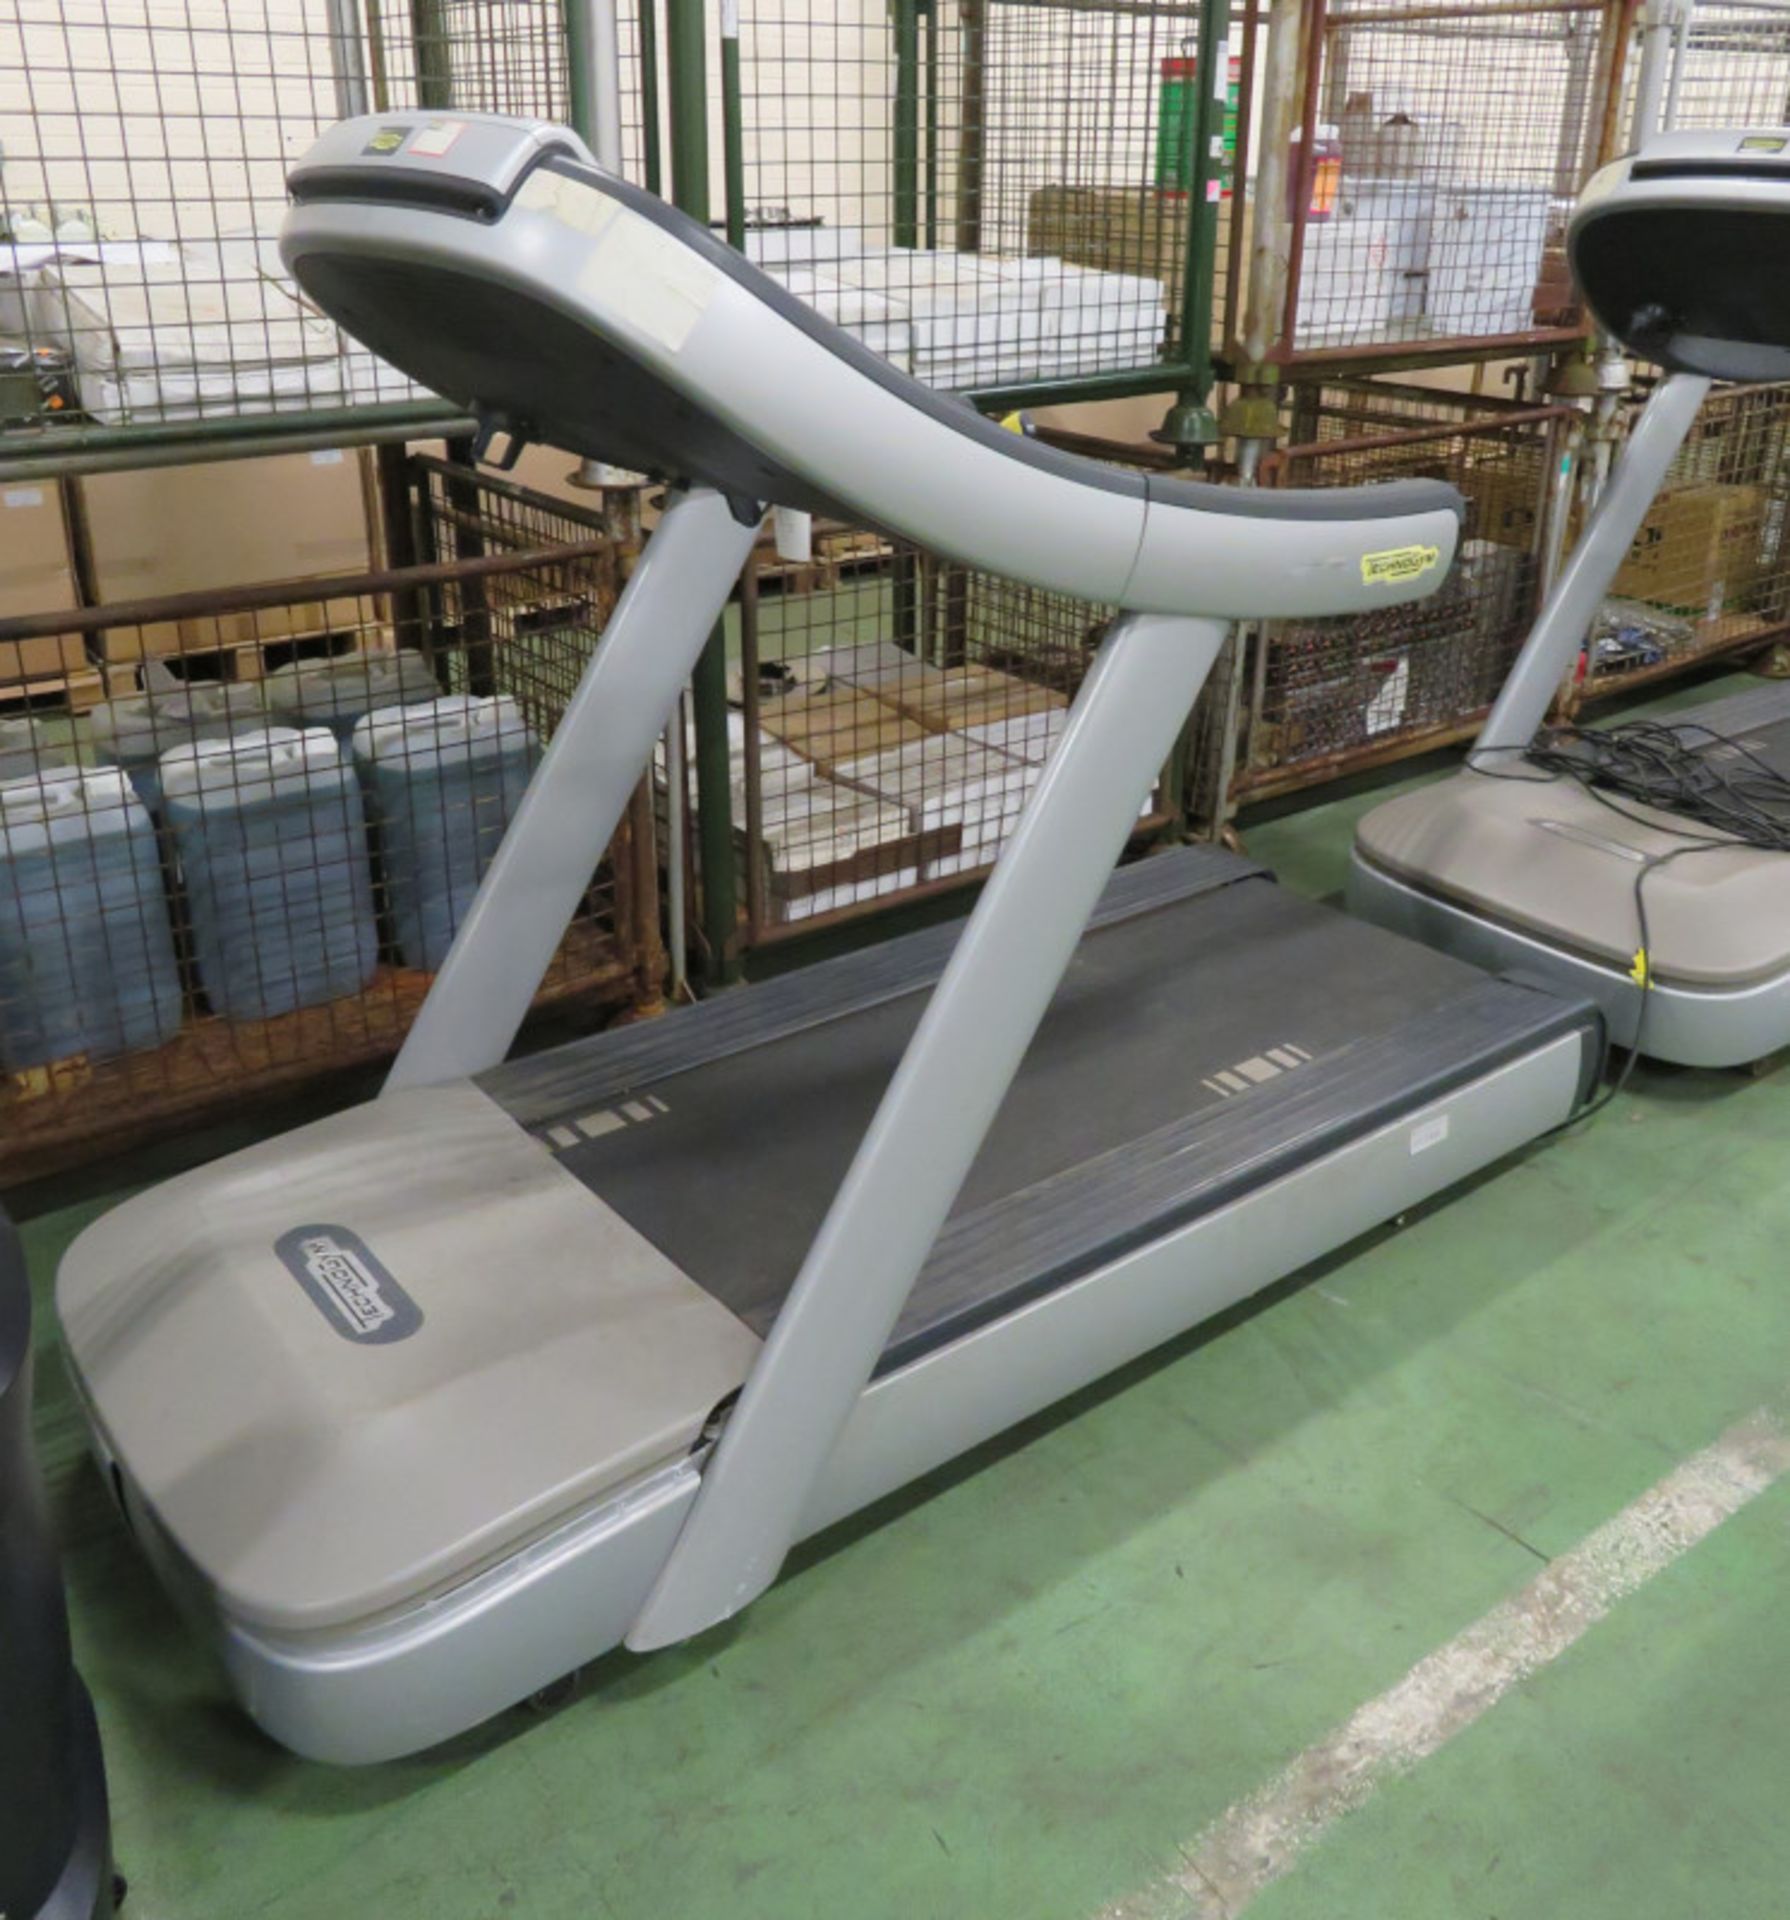 TechnoGym RunNow700 Treadmill L 2300mm x W 1000mm x H1570mm - Image 3 of 5